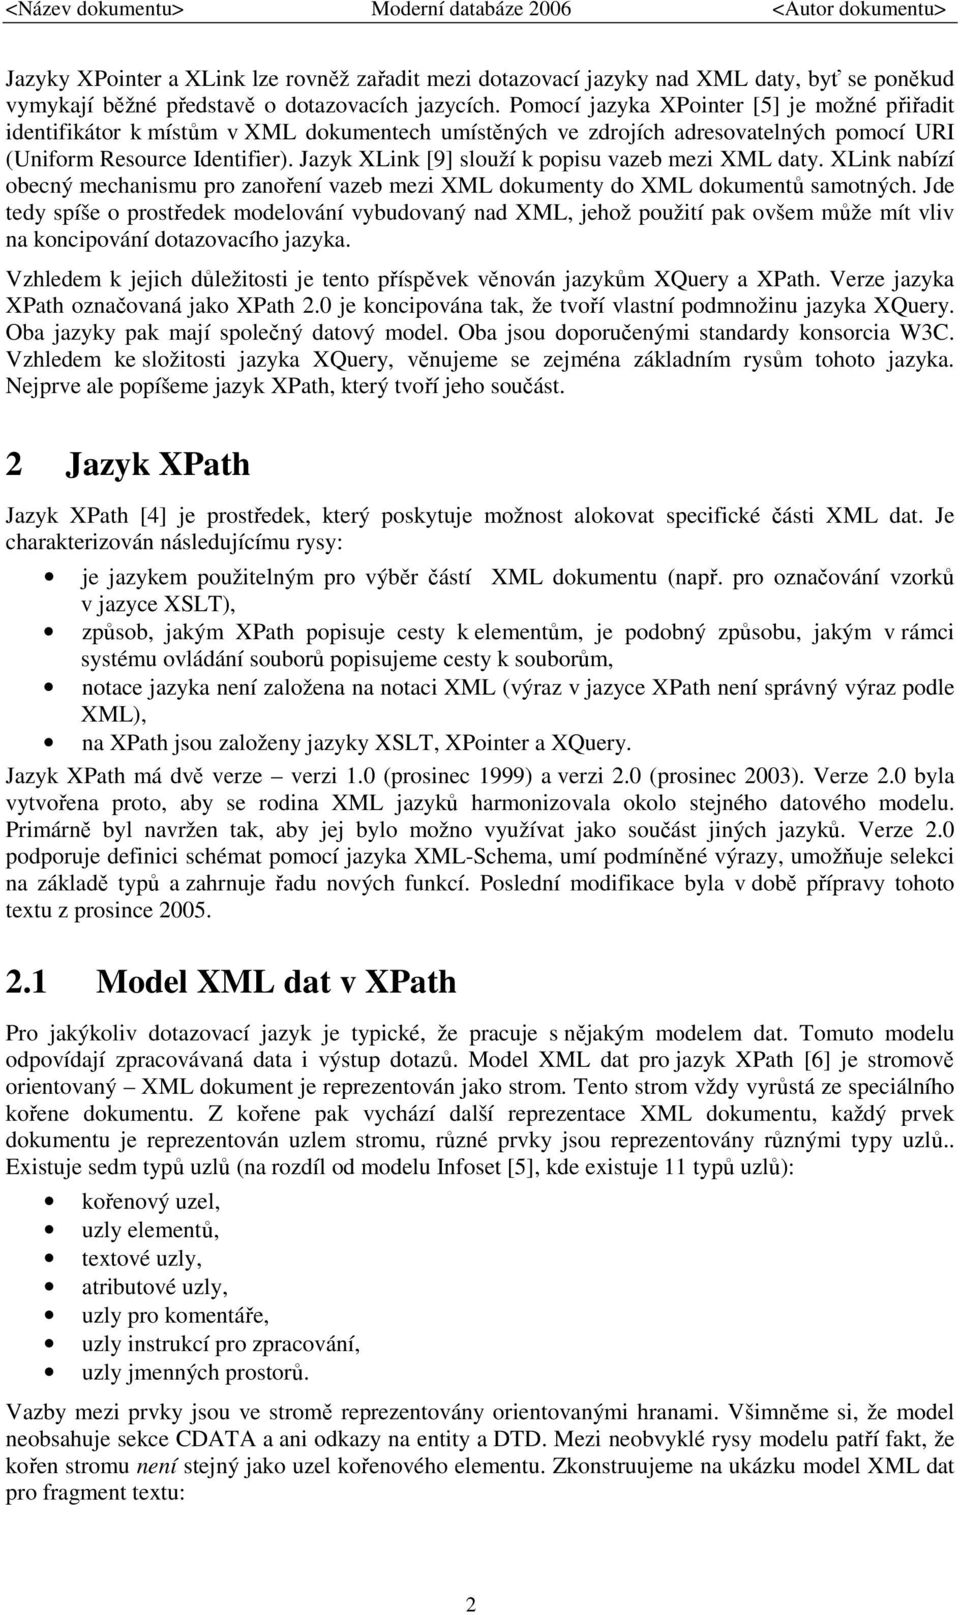 Jazyk XLink [9] slouží k popisu vazeb mezi XML daty. XLink nabízí obecný mechanismu pro zanoření vazeb mezi XML dokumenty do XML dokumentů samotných.